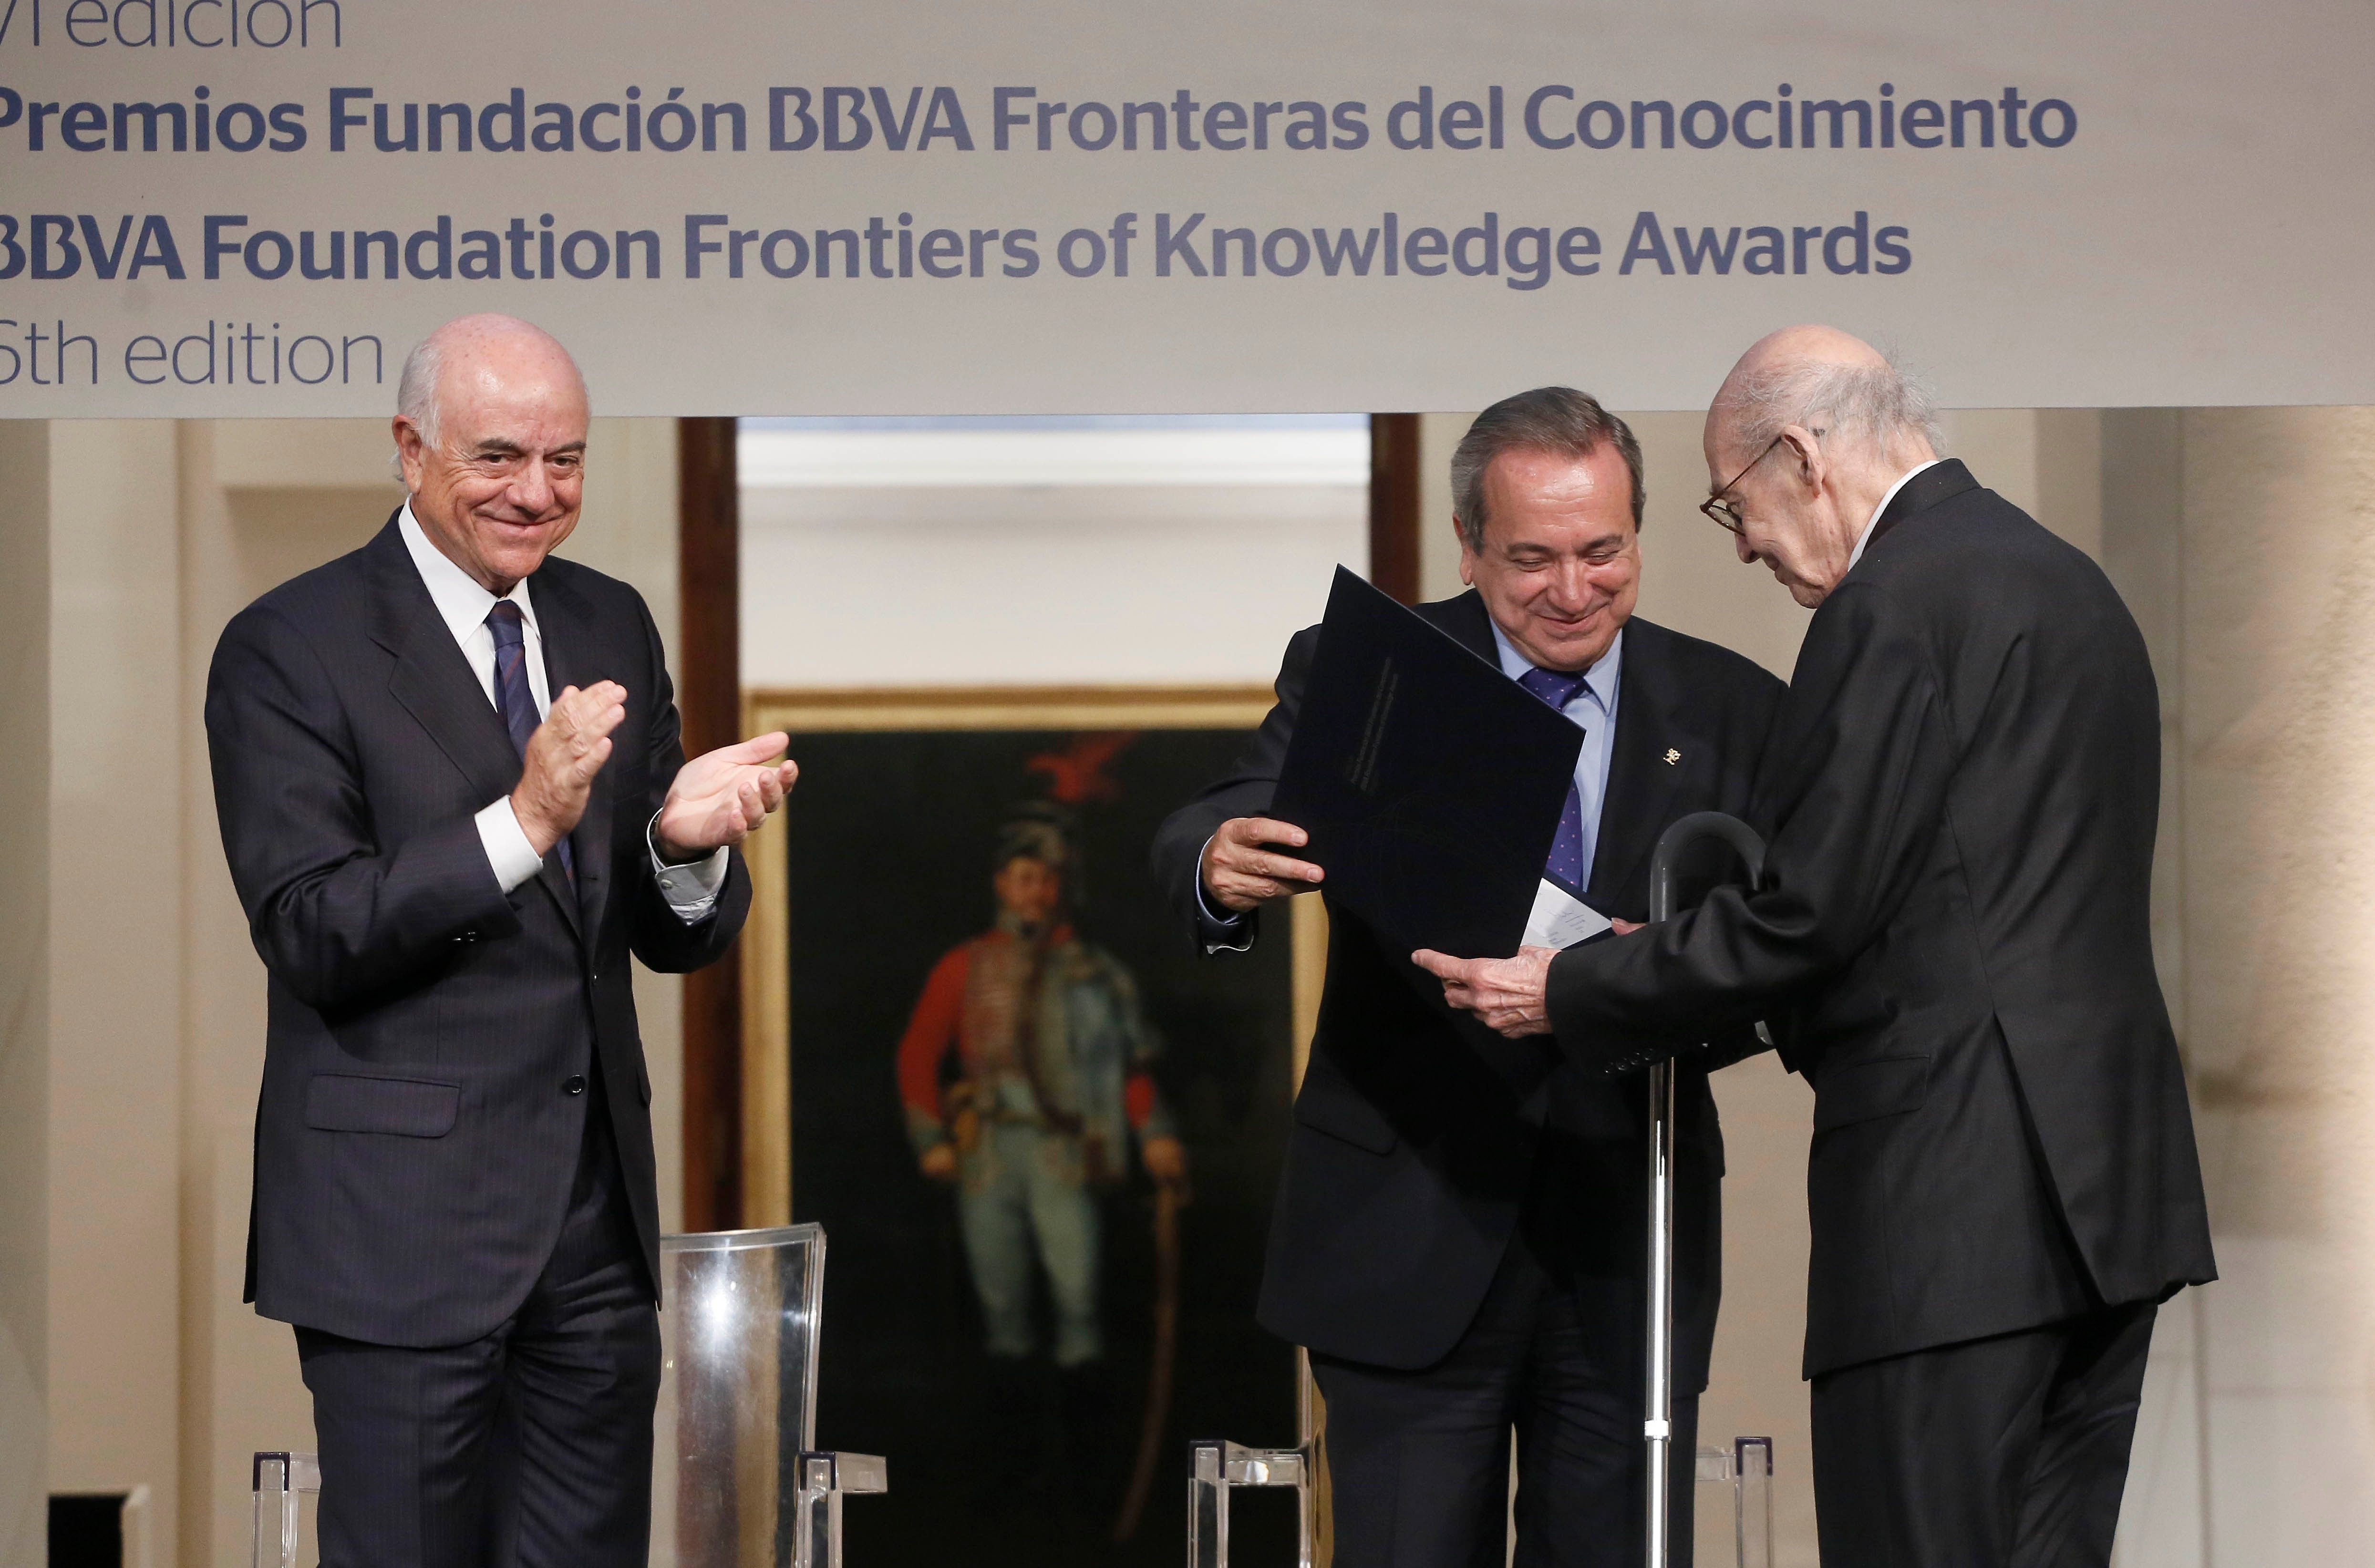 Fotografía de Marvin Minsky recibiendo el Premio Fundación BBVA Fronteras del Conocimiento con la presencia de Francisco González